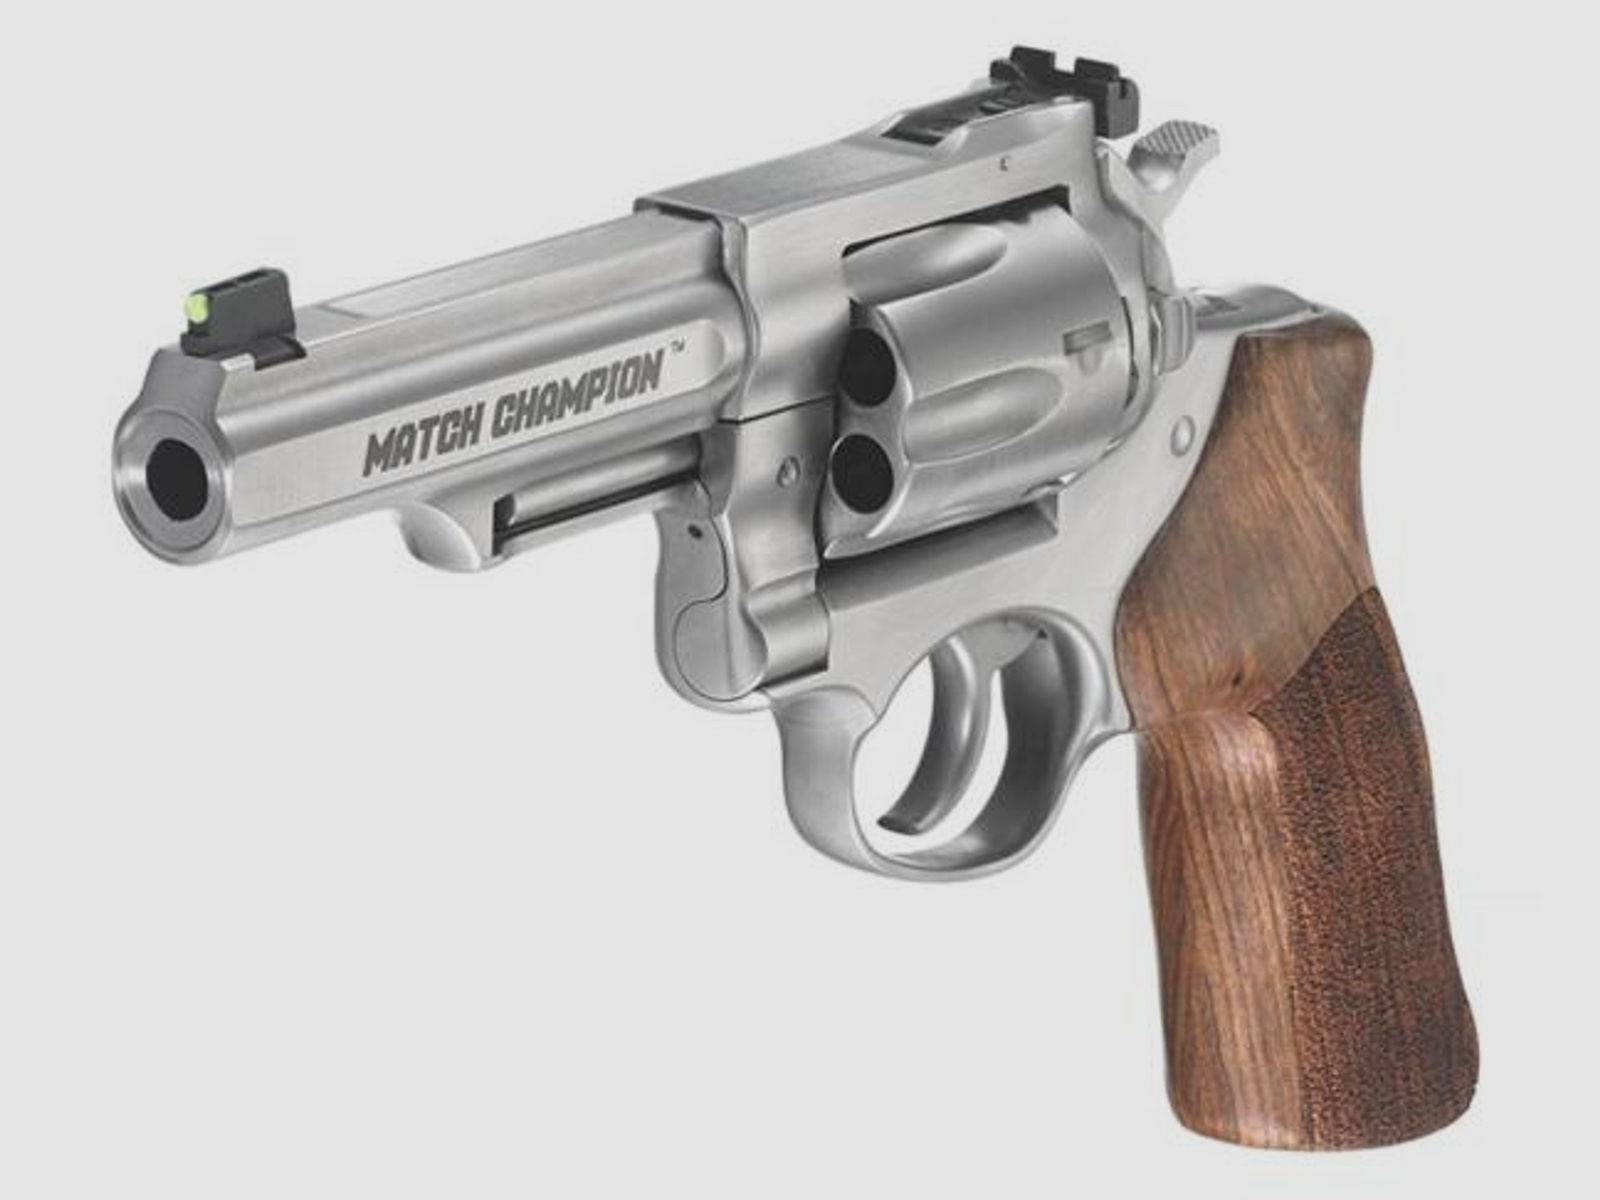 RUGER Revolver Mod. GP100 -4,2' MatchChampion .357Mag